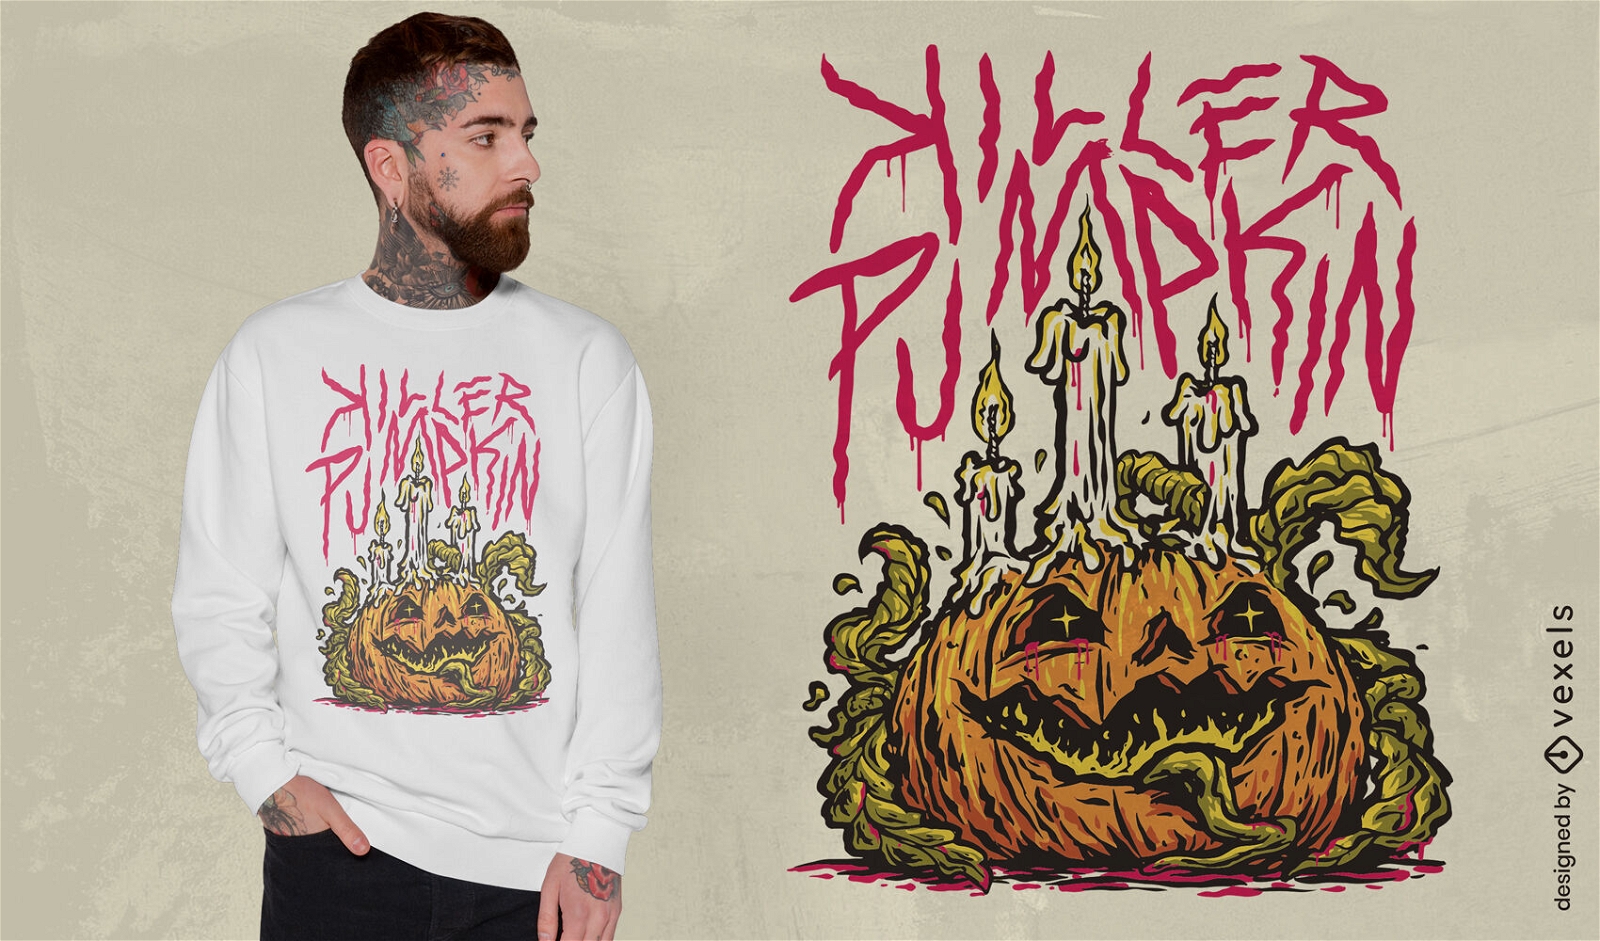 Killer pumpkin monster editable t-shirt PSD